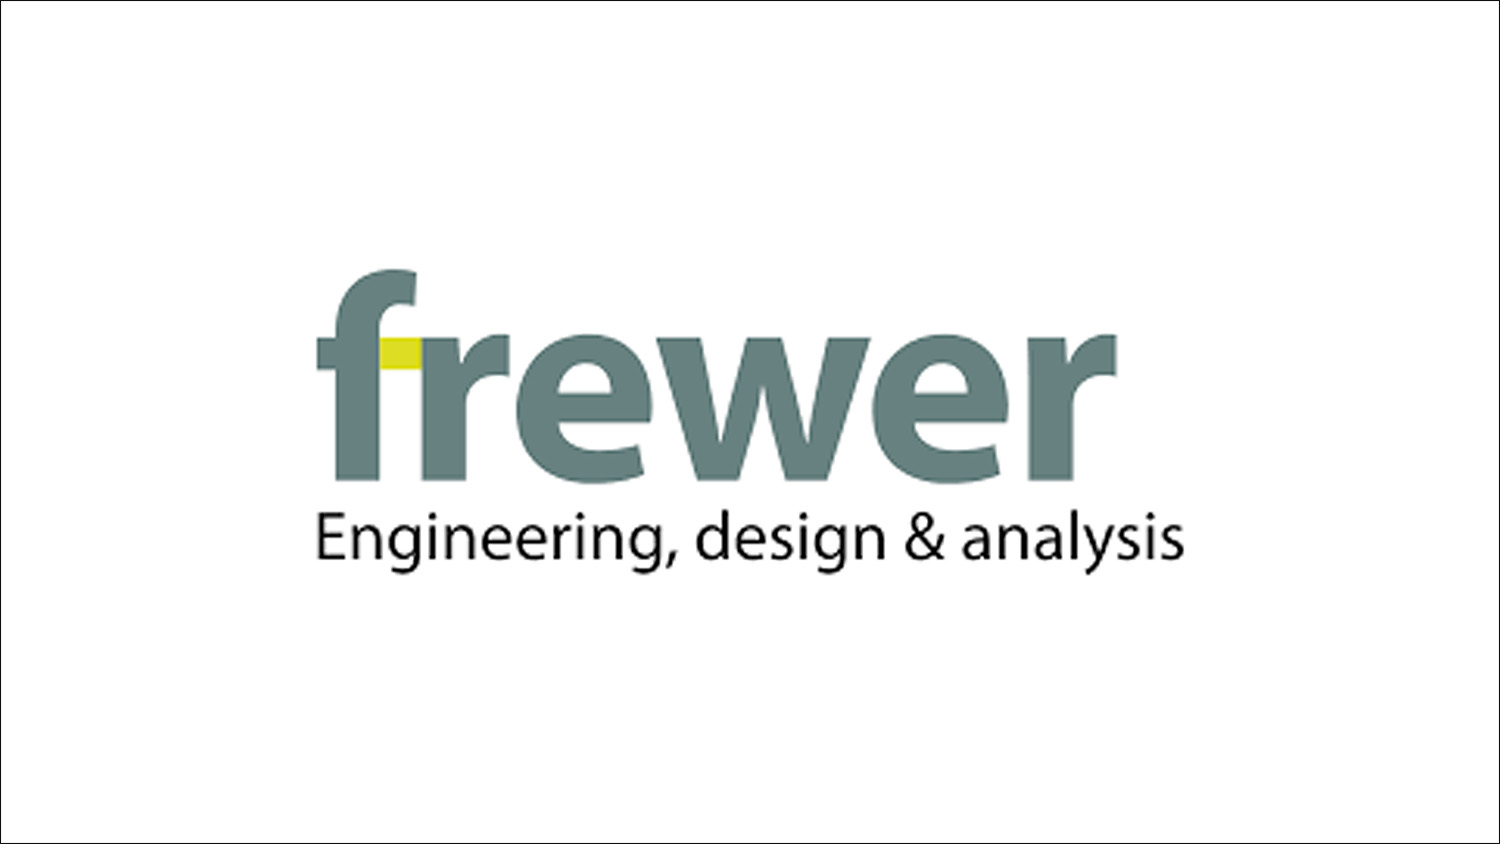 Frewer Engineering